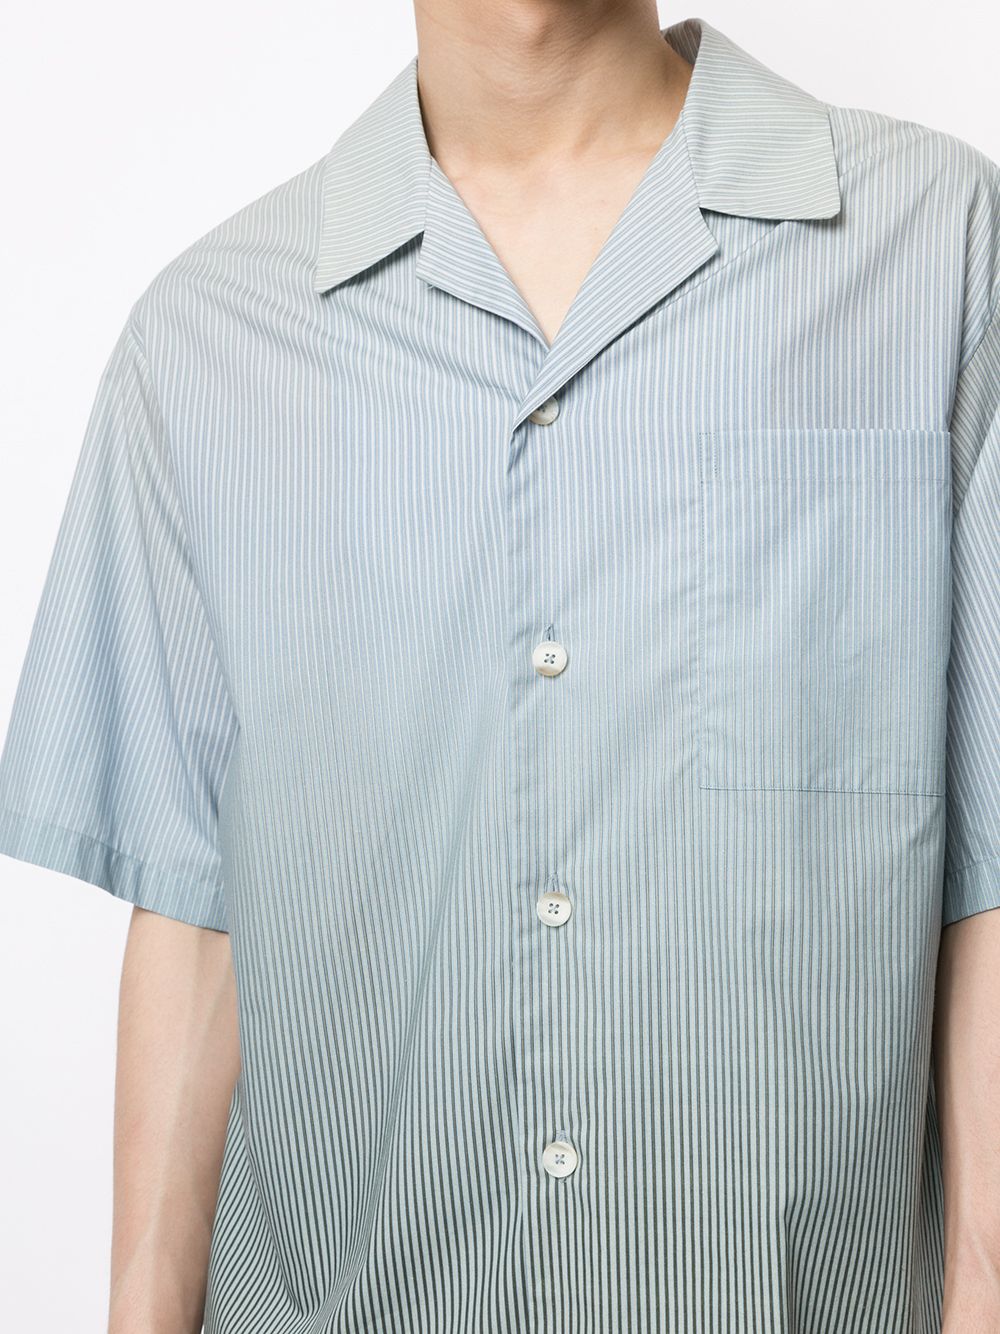 фото Qasimi полосатая рубашка с эффектом градиента